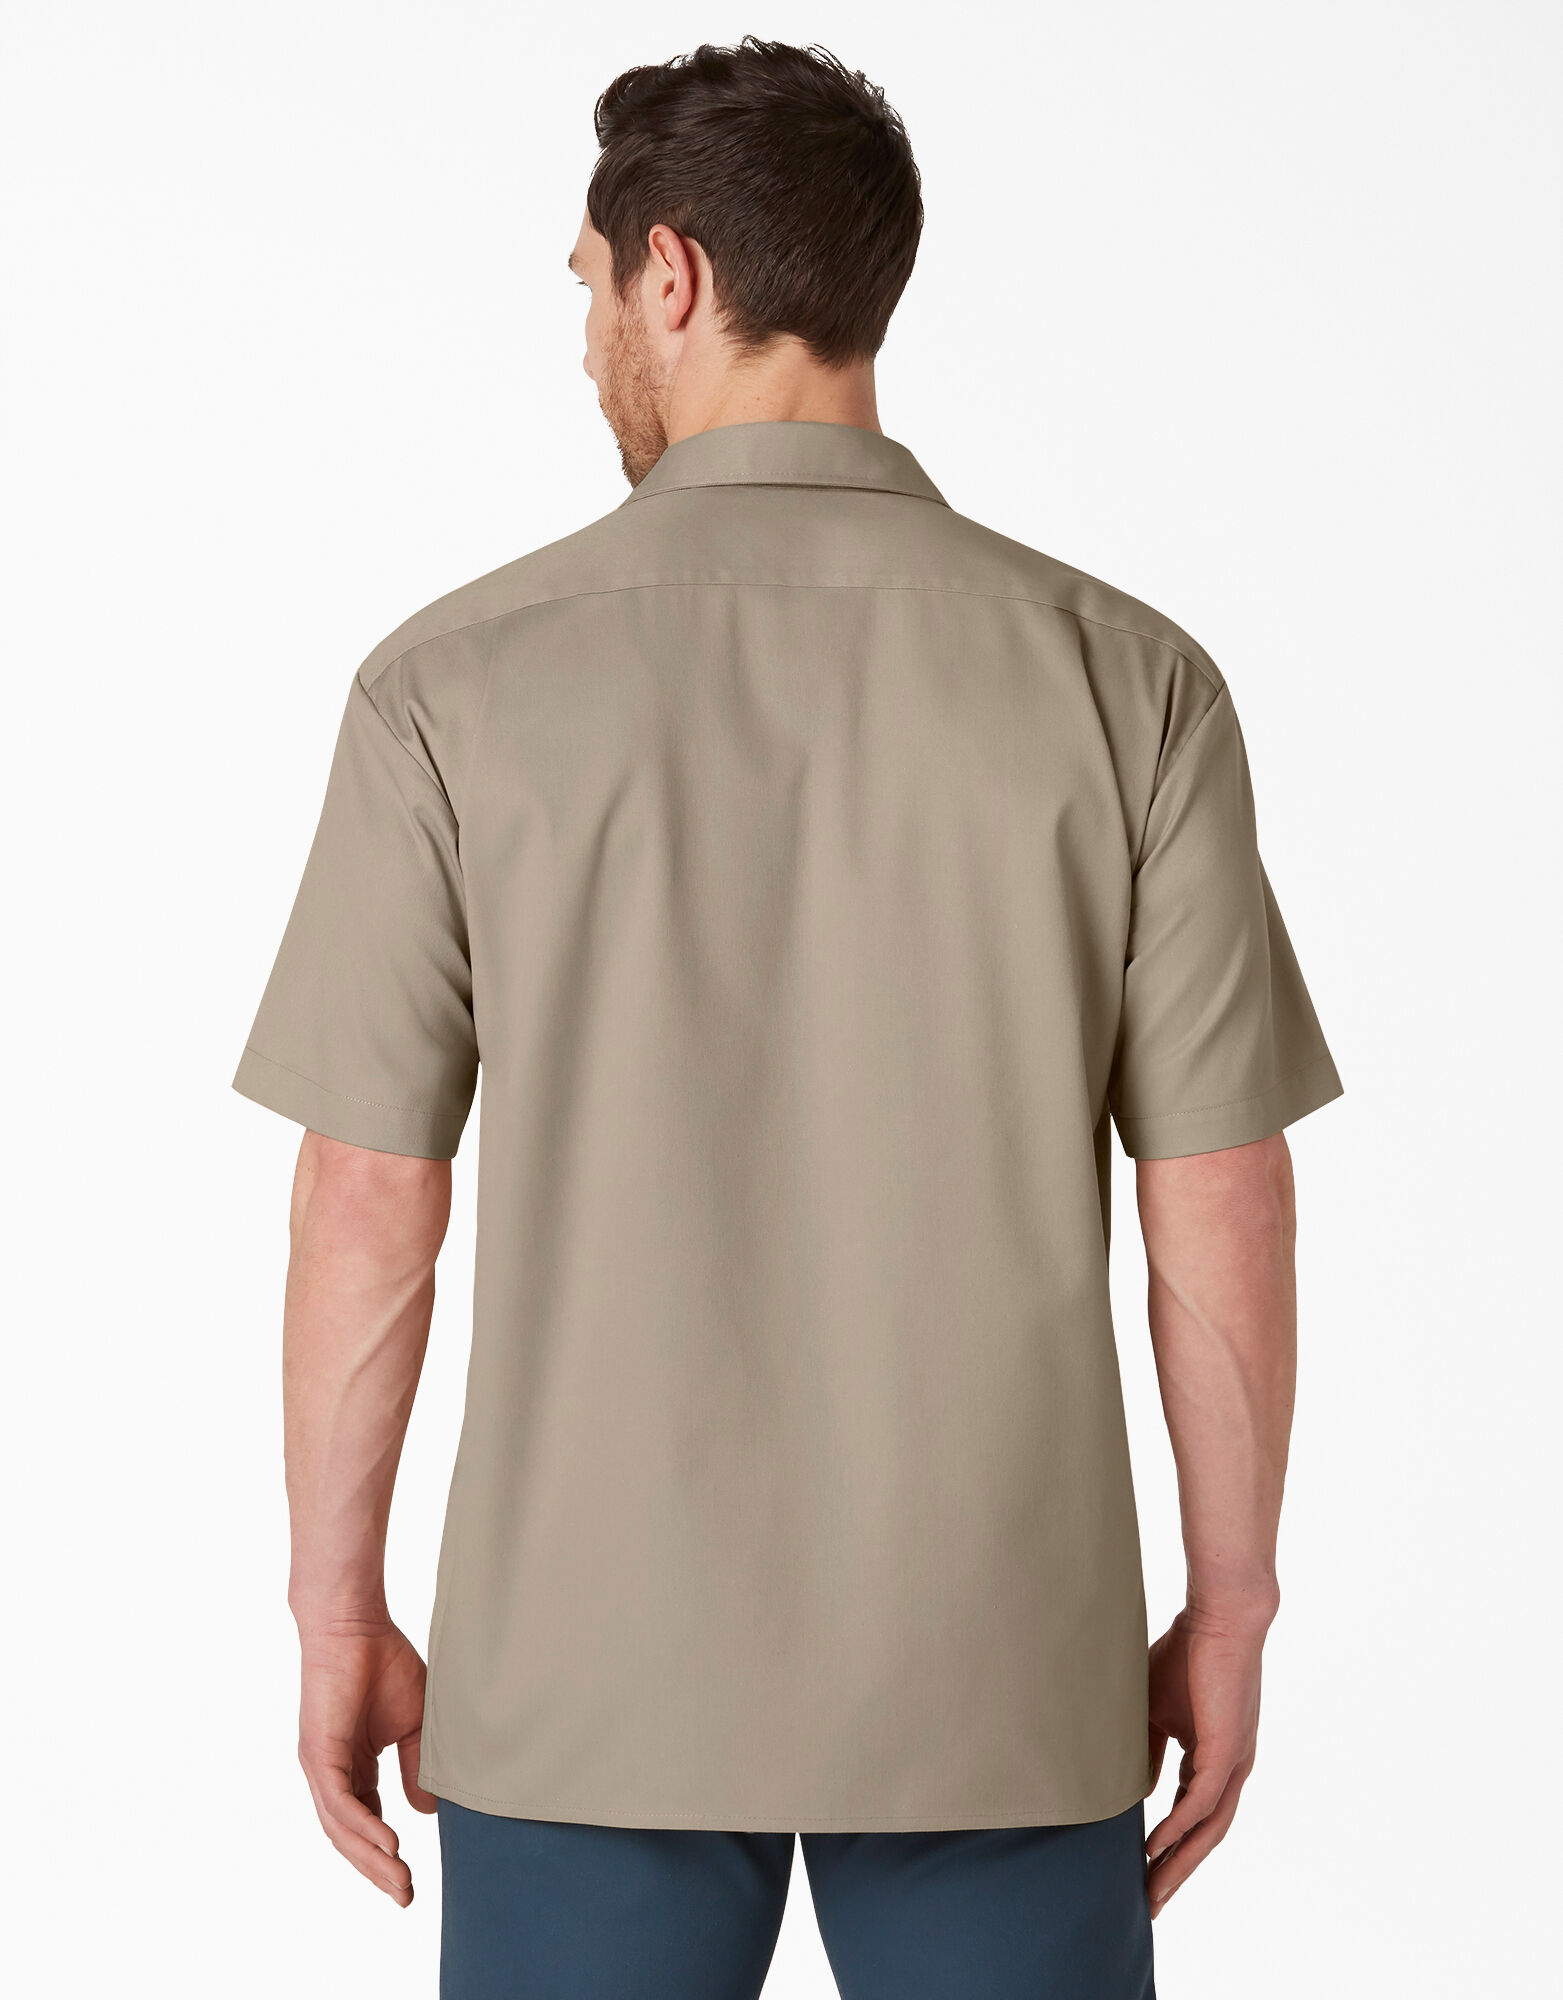 Dickies Men/'s Short Sleeve Flex Work Shirt